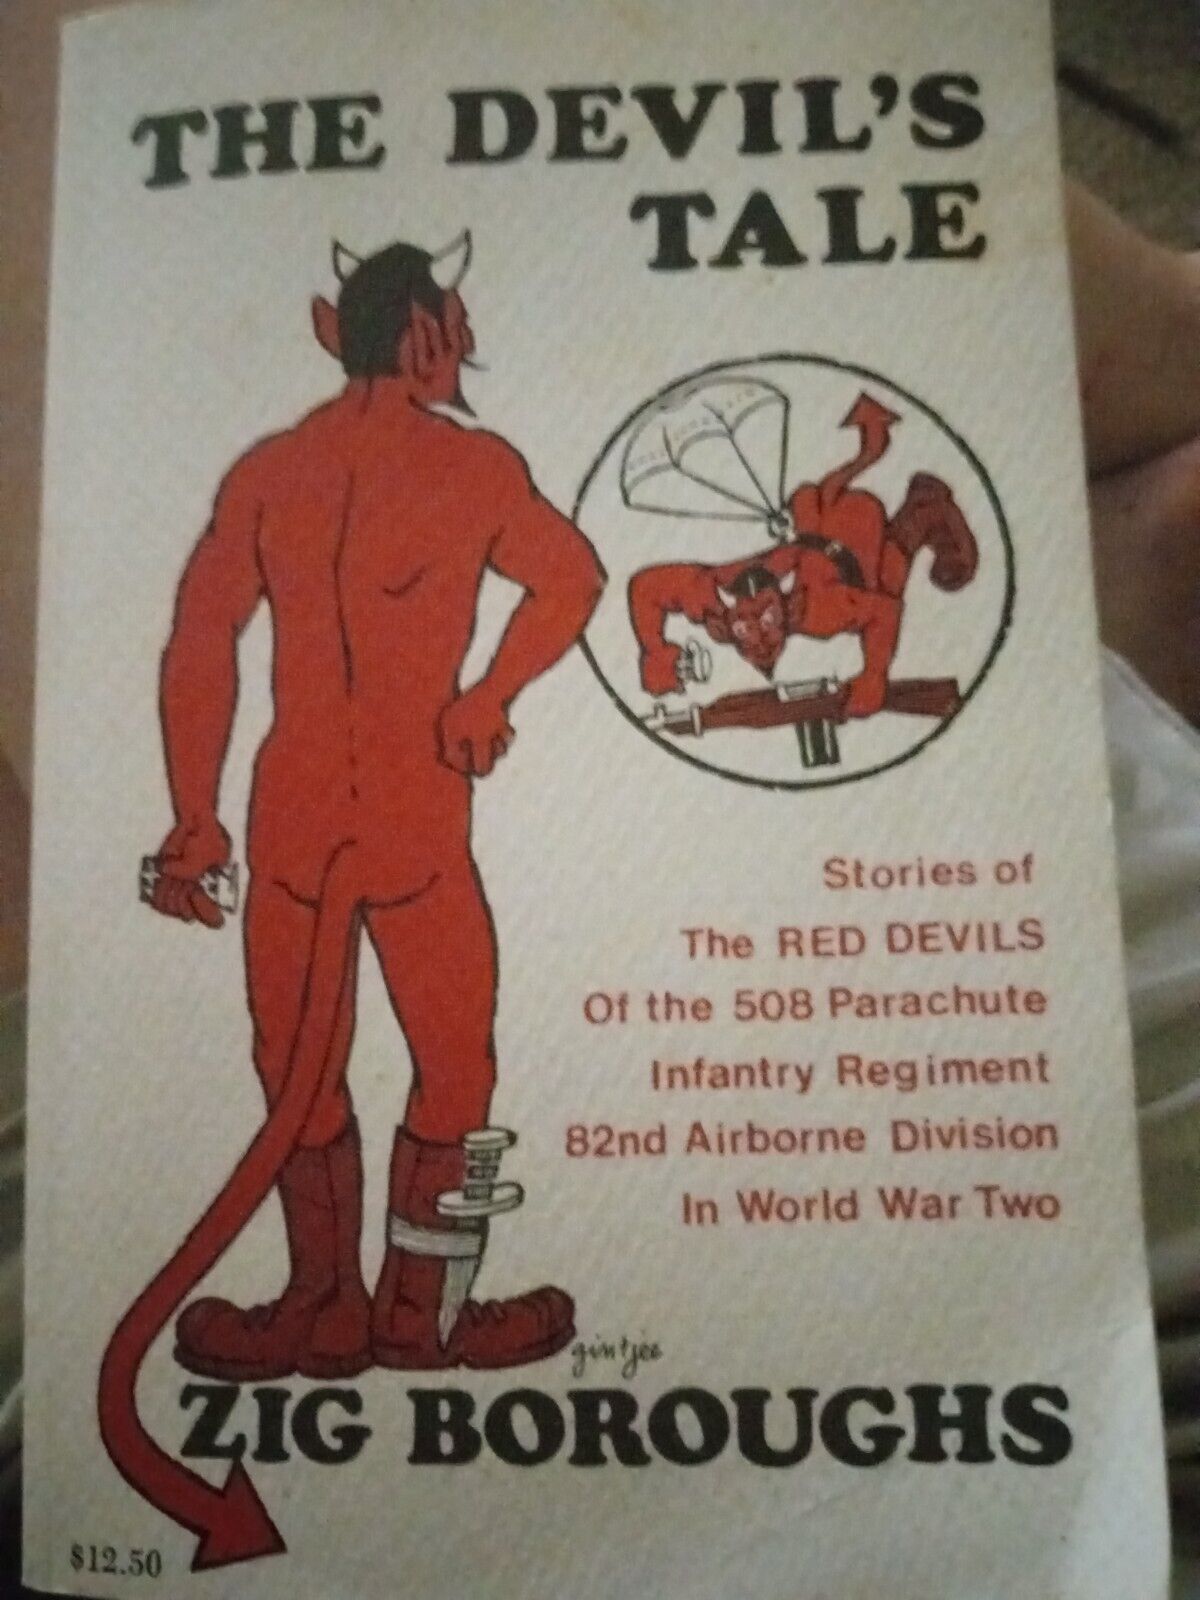 The devil's tale by zig borough autographed 